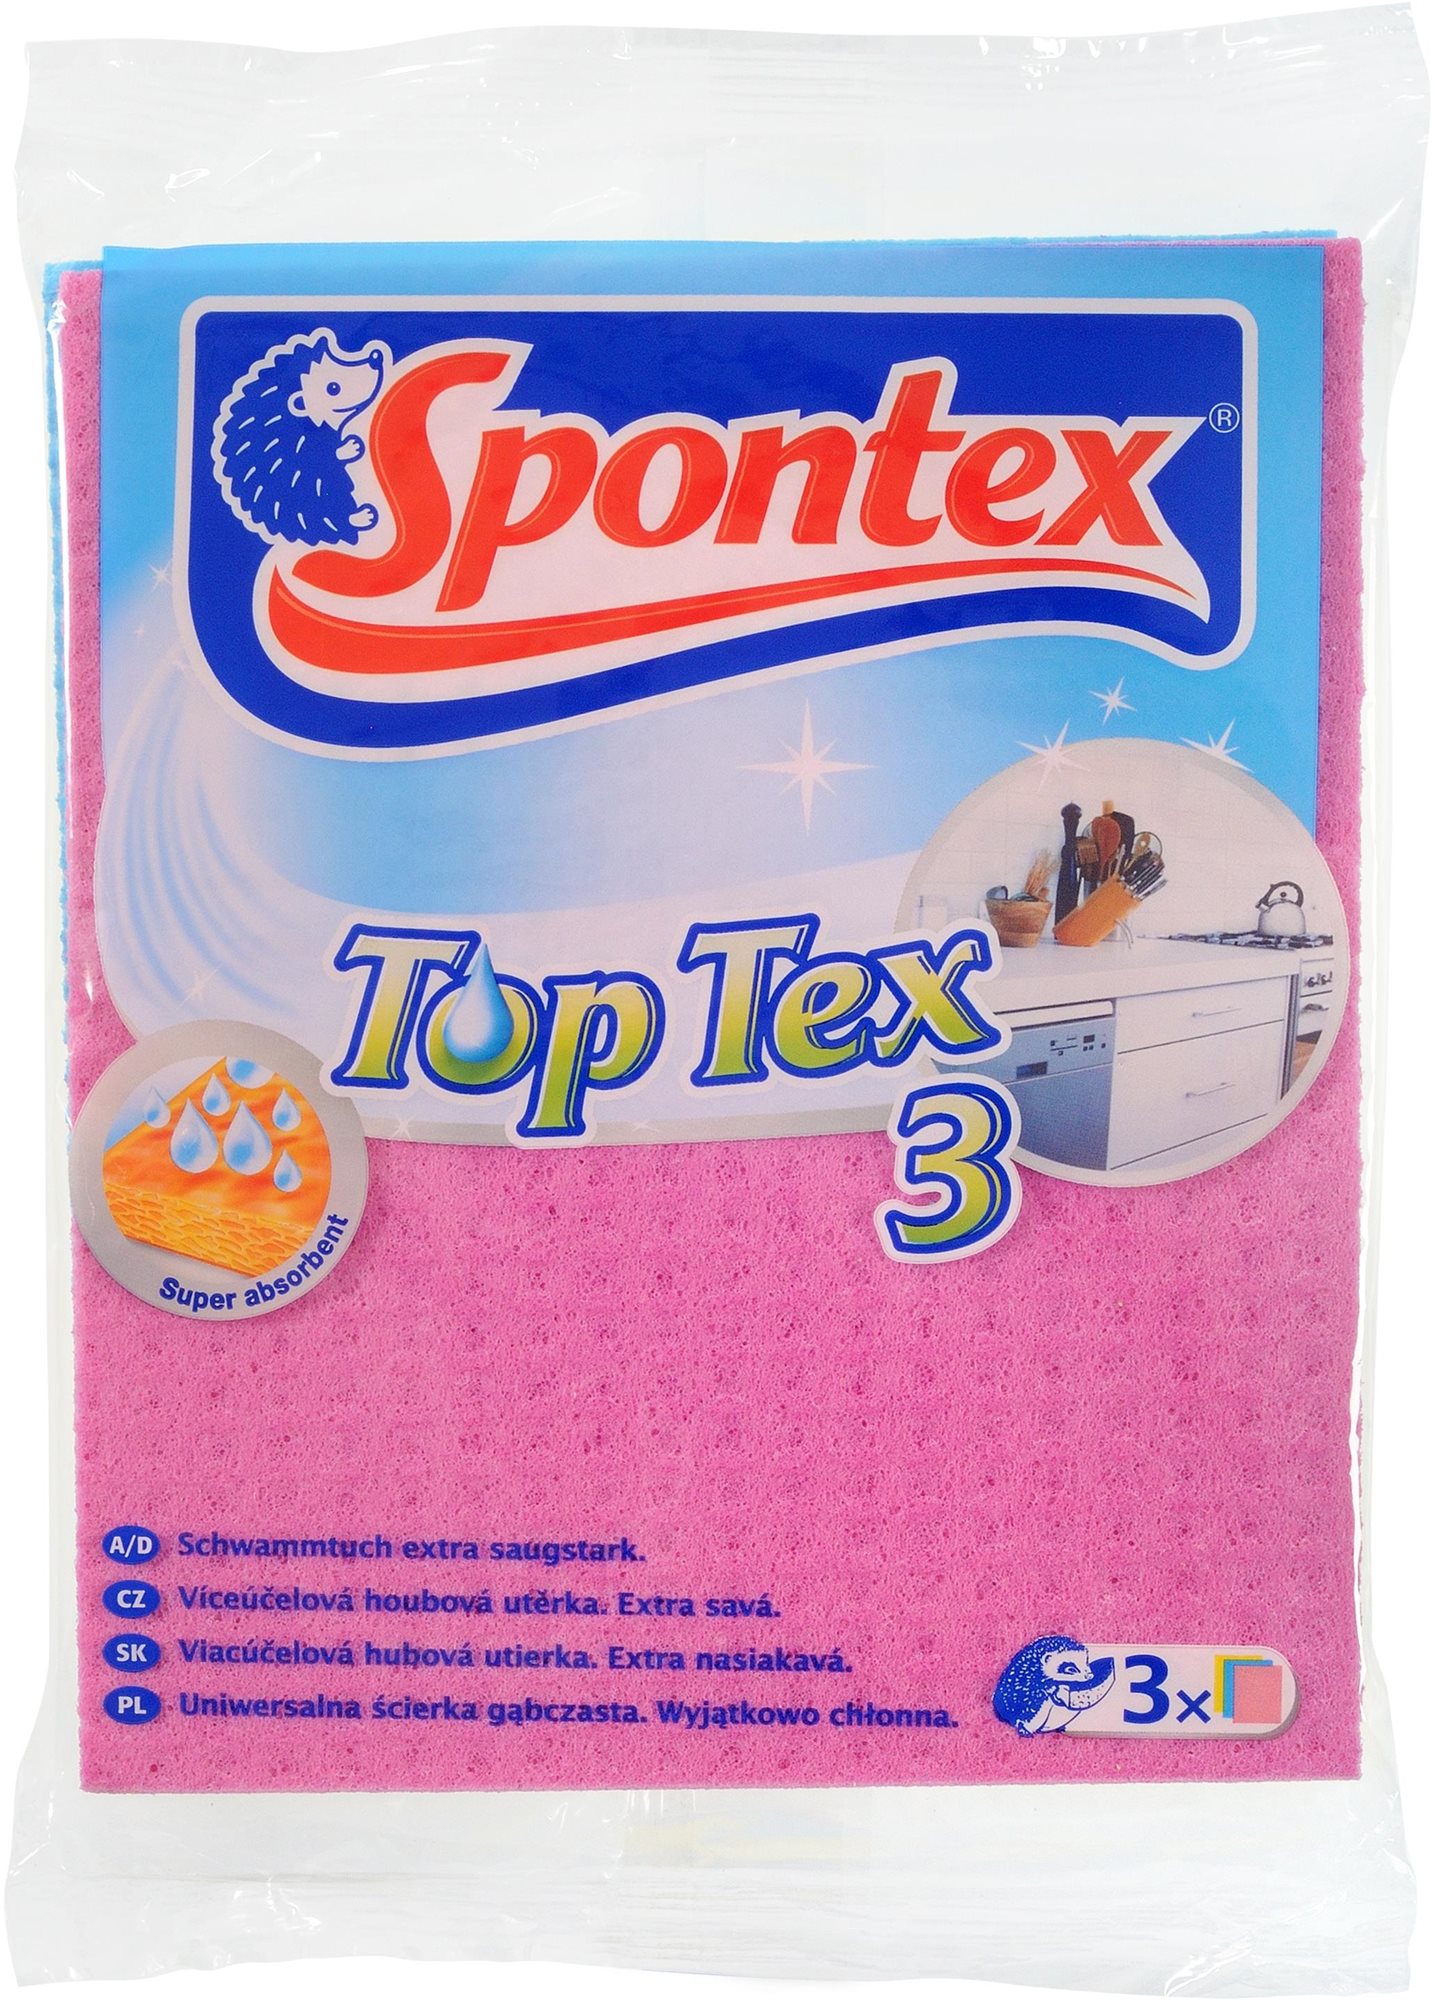 Törlőkendő SPONTEX Top Tex szivacsos kendő 3 db